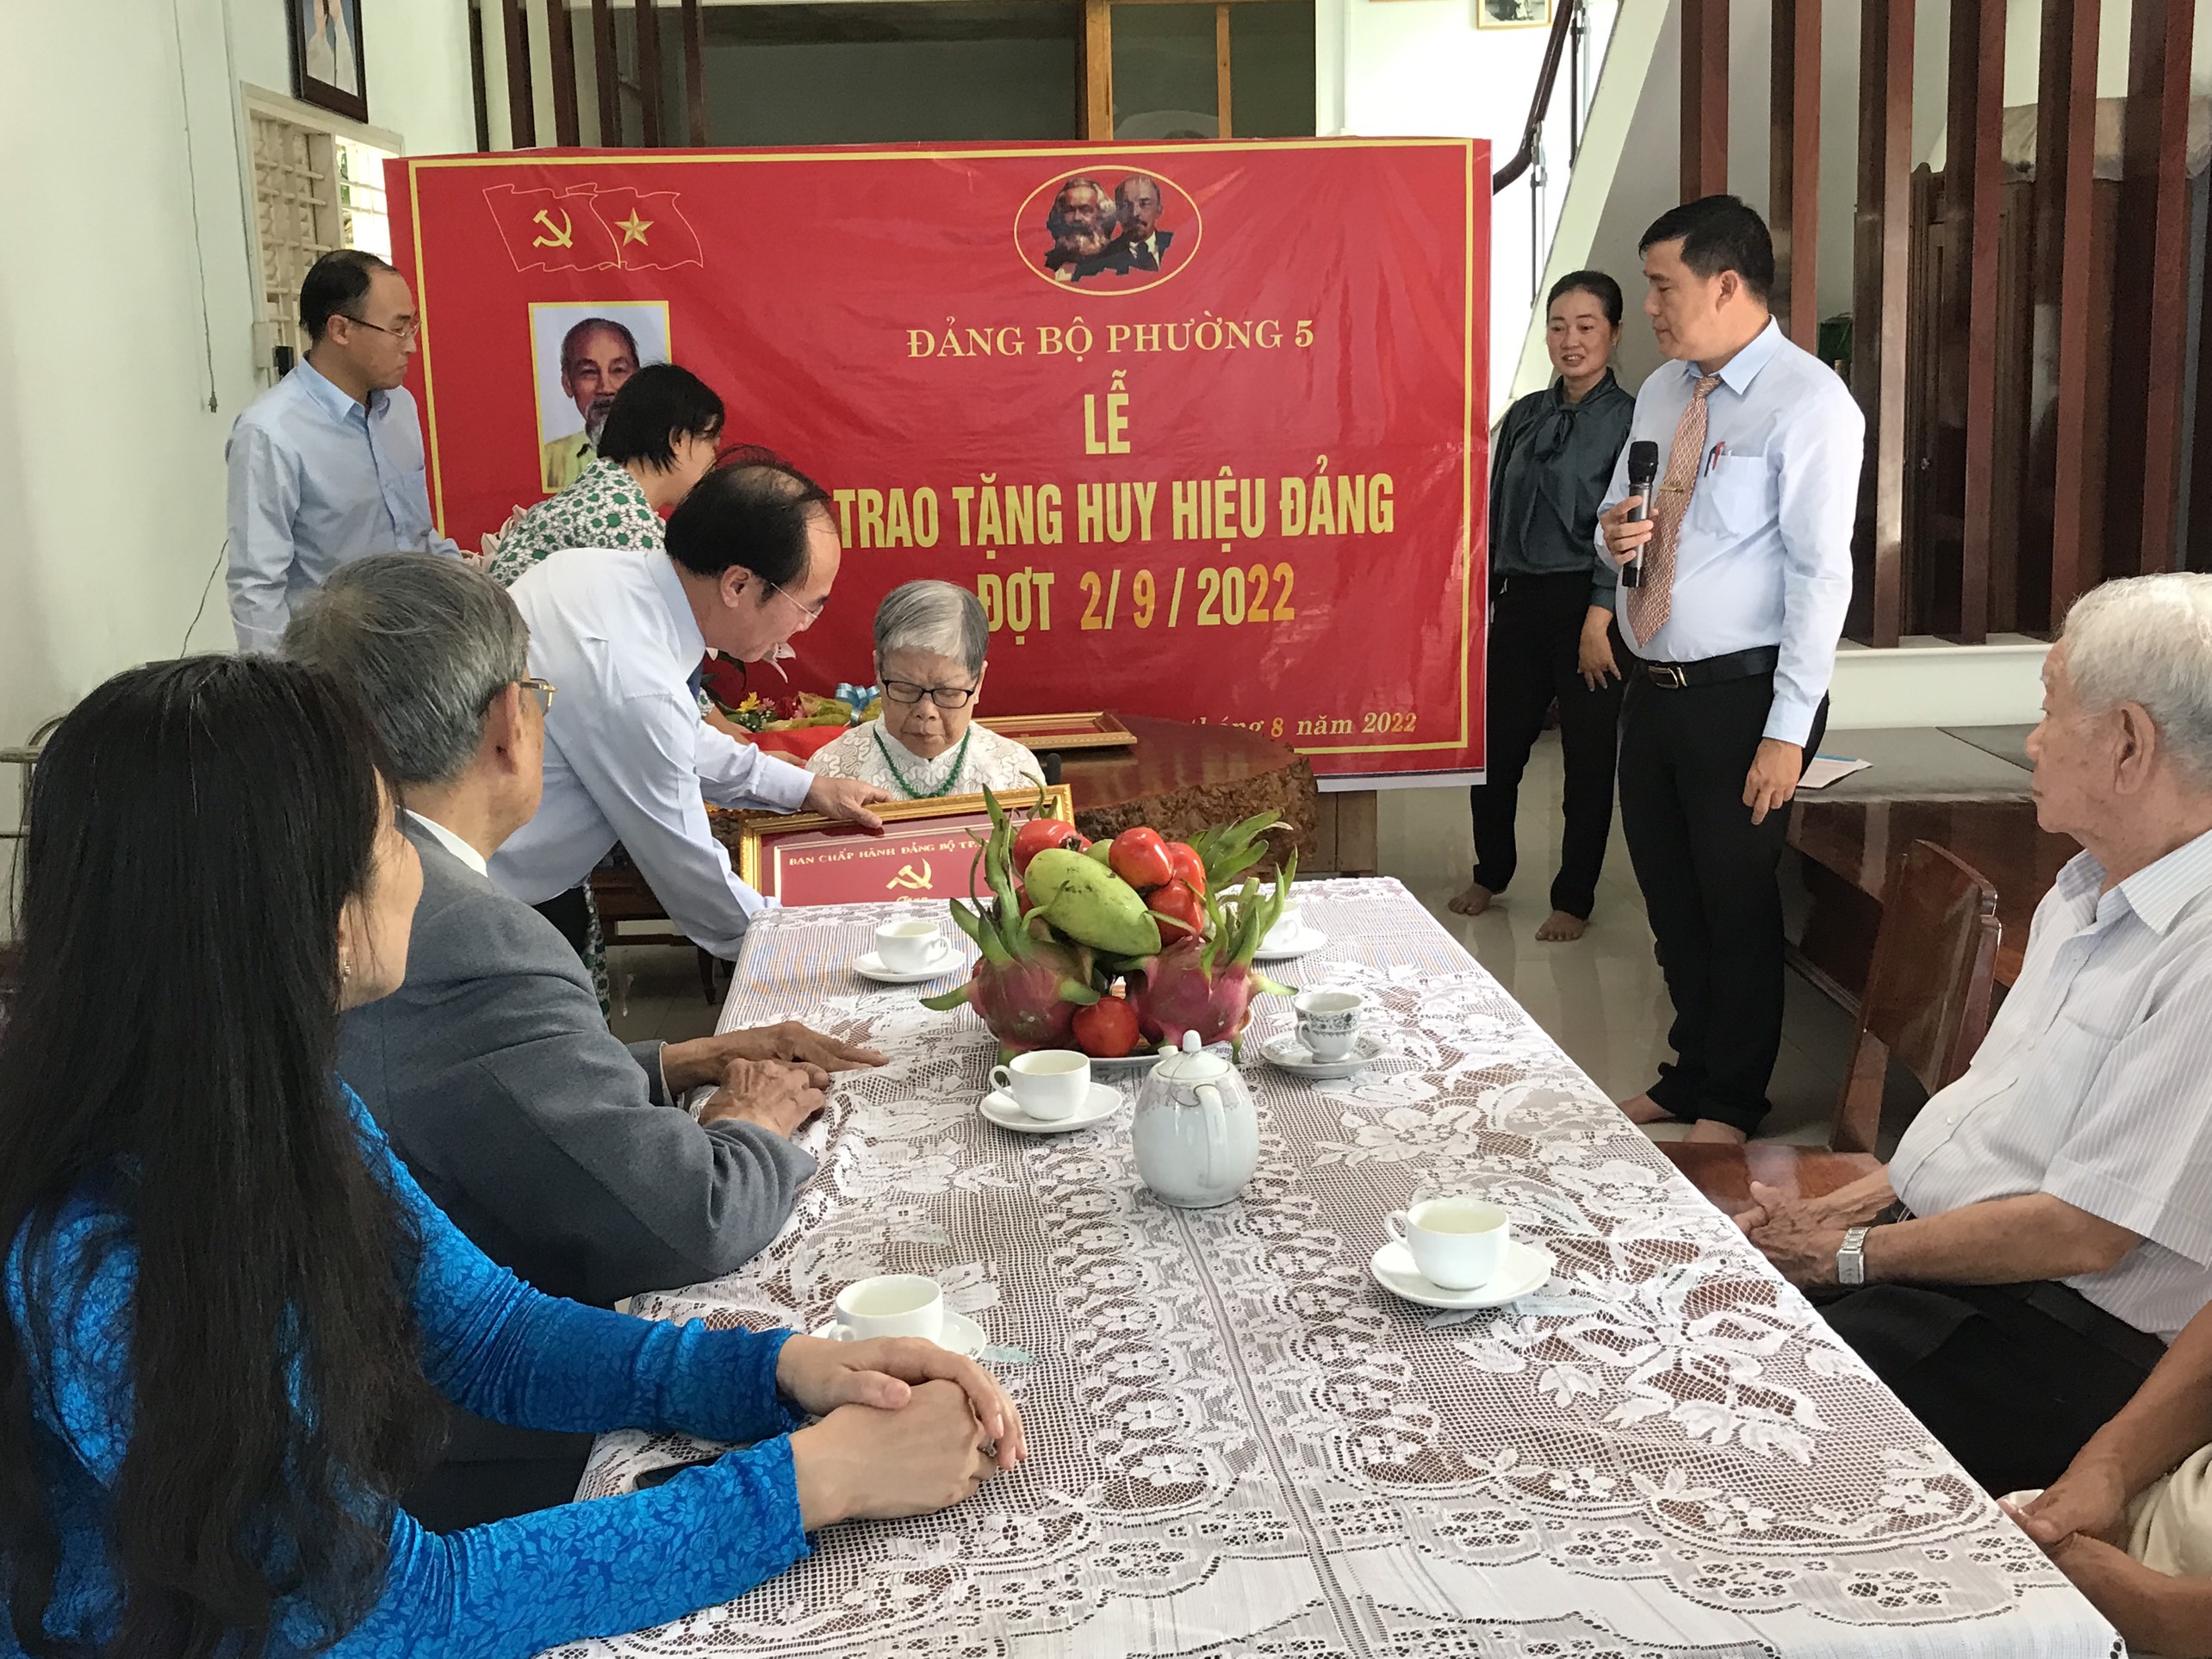 Đảng bộ phường 5 tổ chức trao Huy hiệu Đảng tại nhà cho đồng chí 